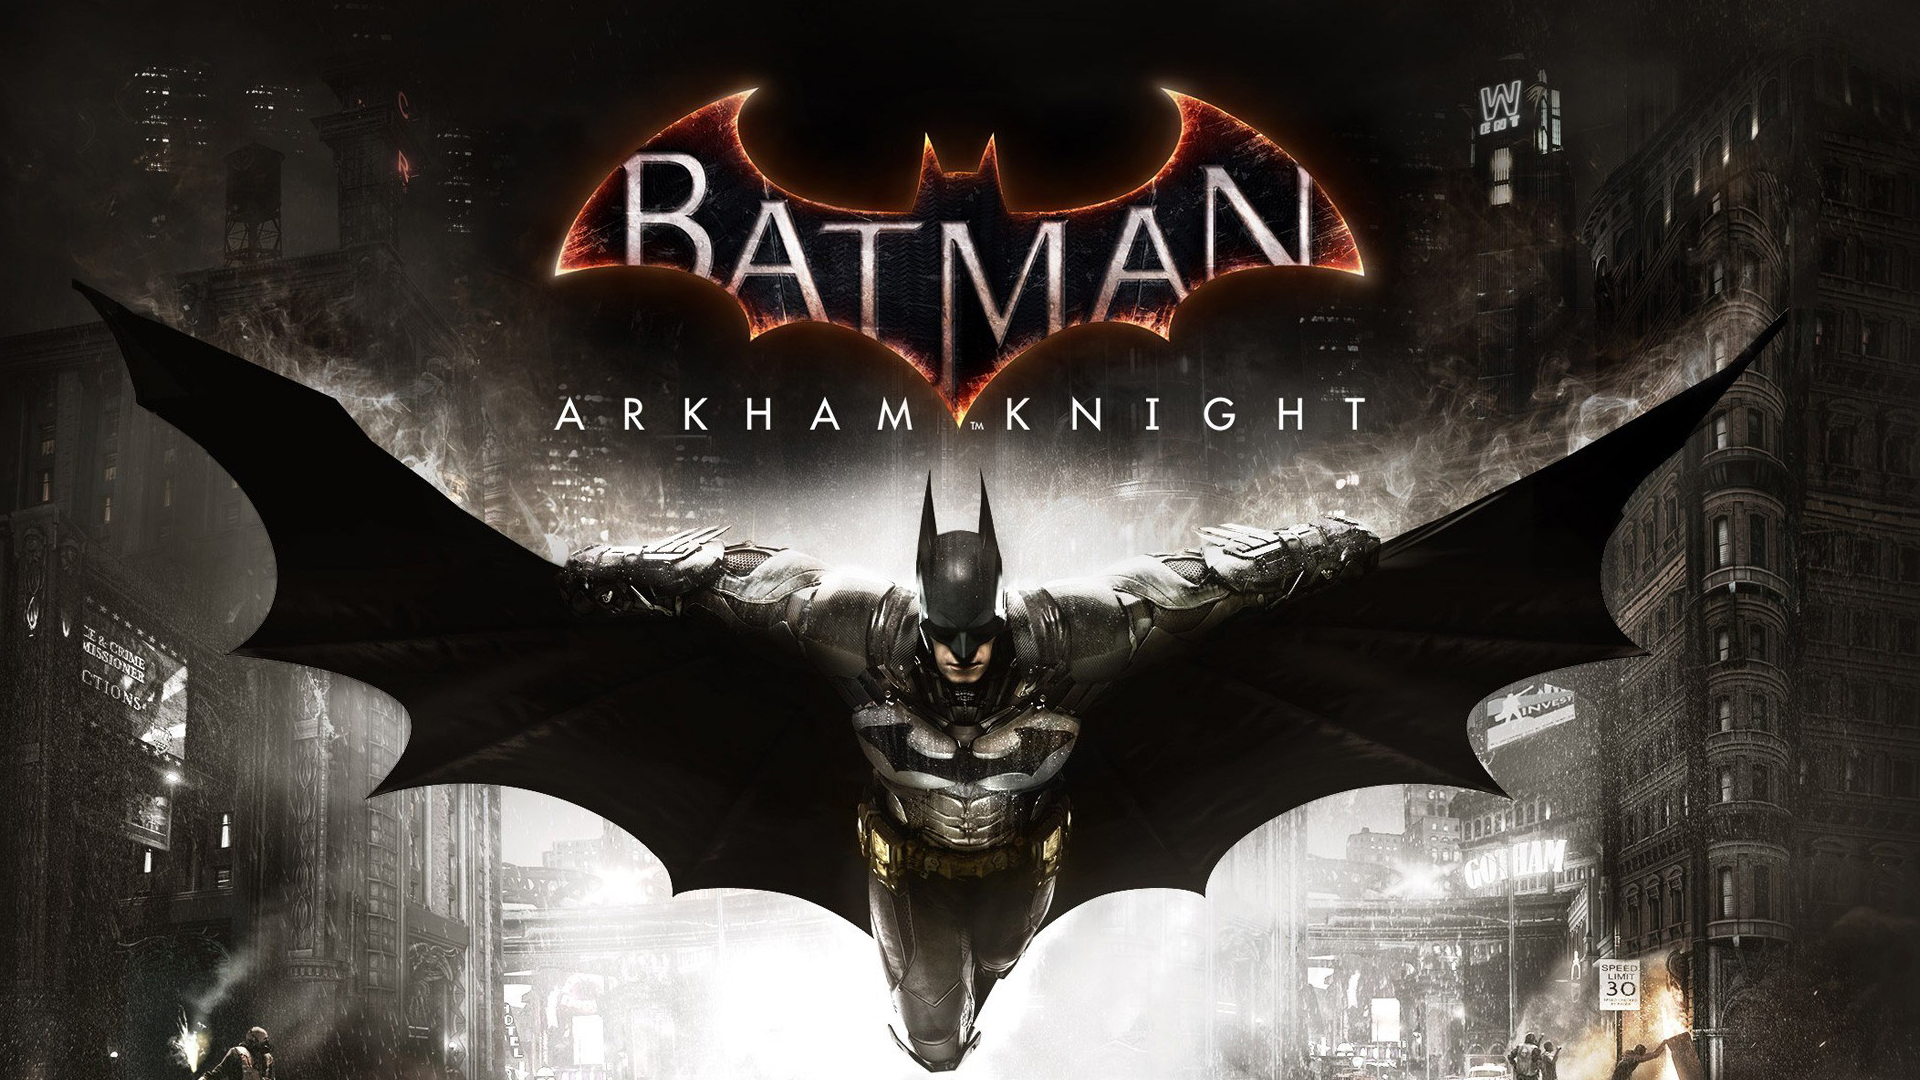 Batman Arkham Knight Hd Poster - HD Wallpaper 